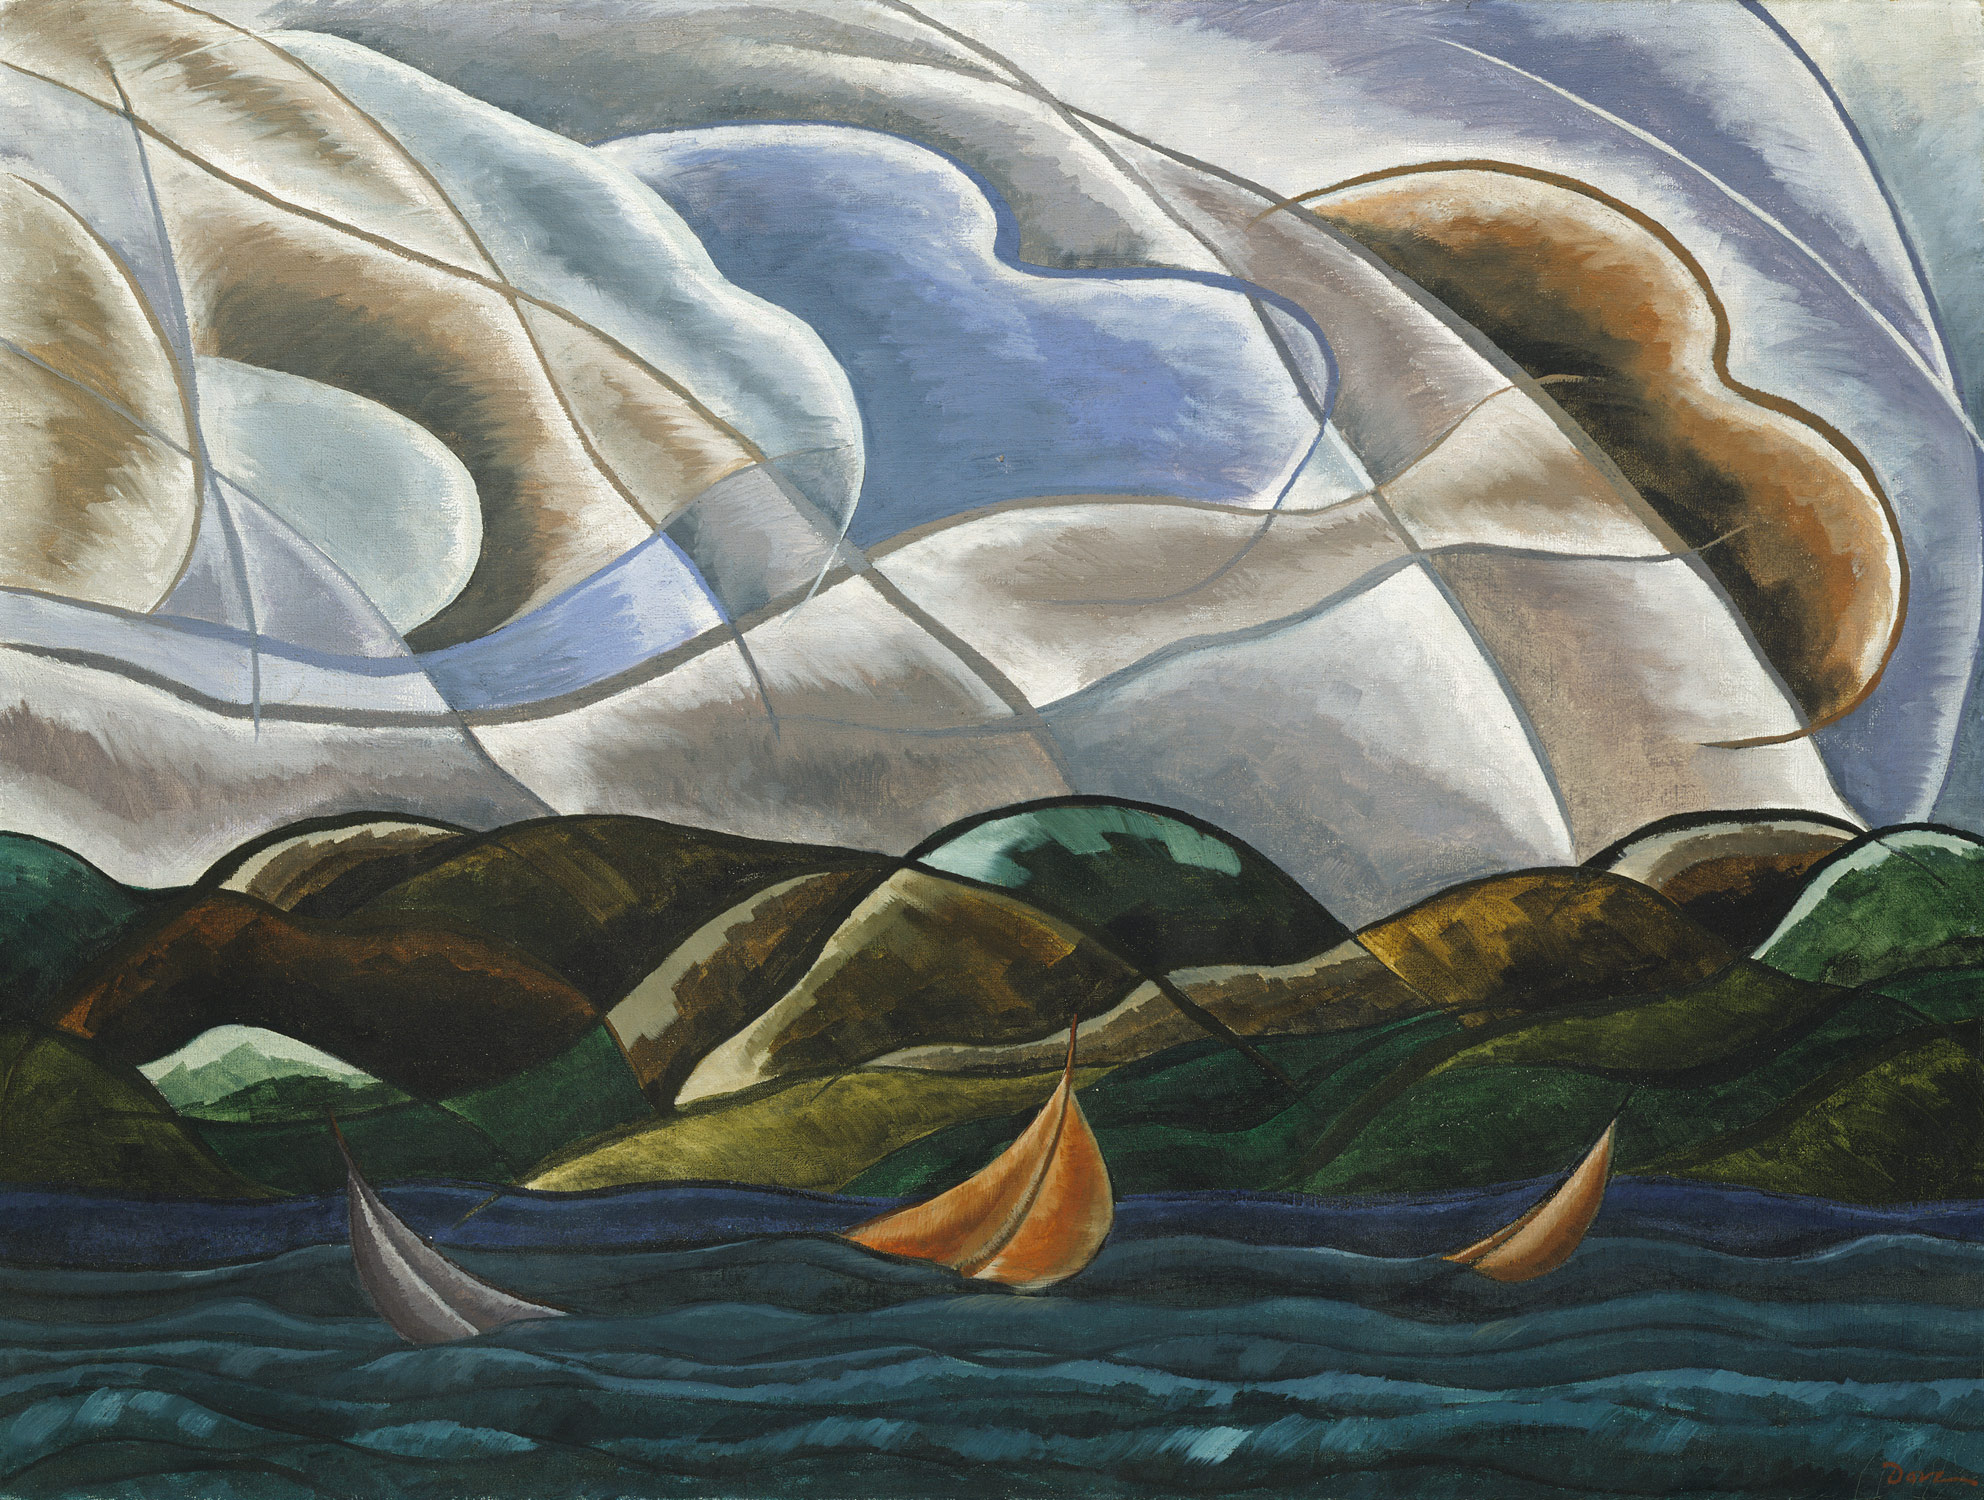 Felhők és Víz by Arthur Dove - 1930 - 75.2 x 100.6 cm 